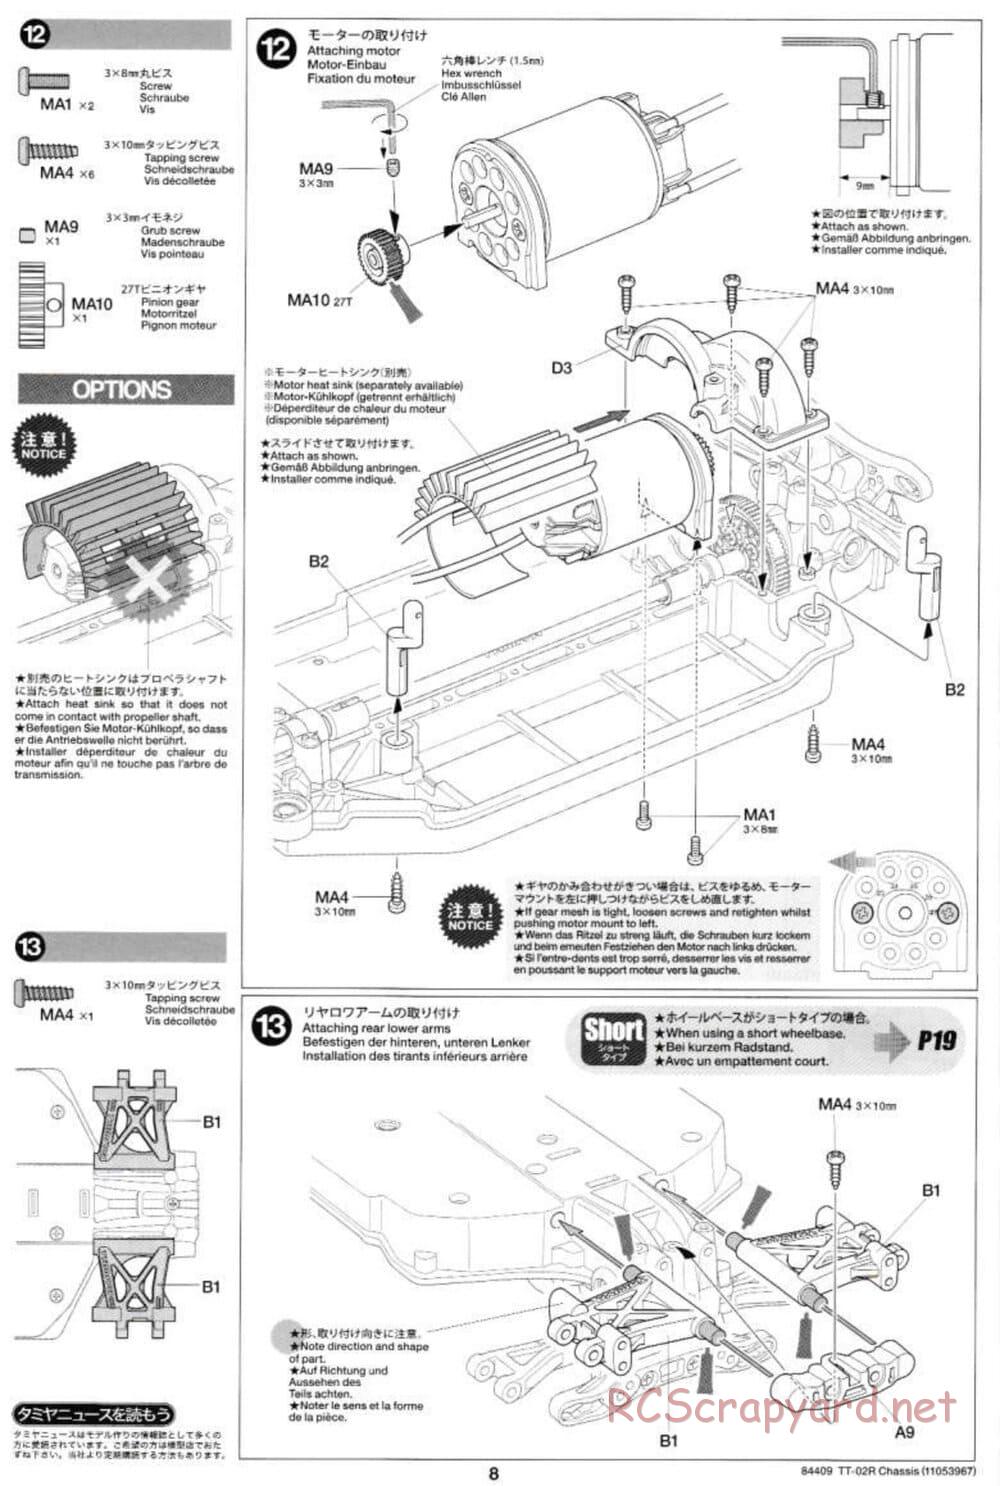 Tamiya - TT-02R Chassis - Manual - Page 8